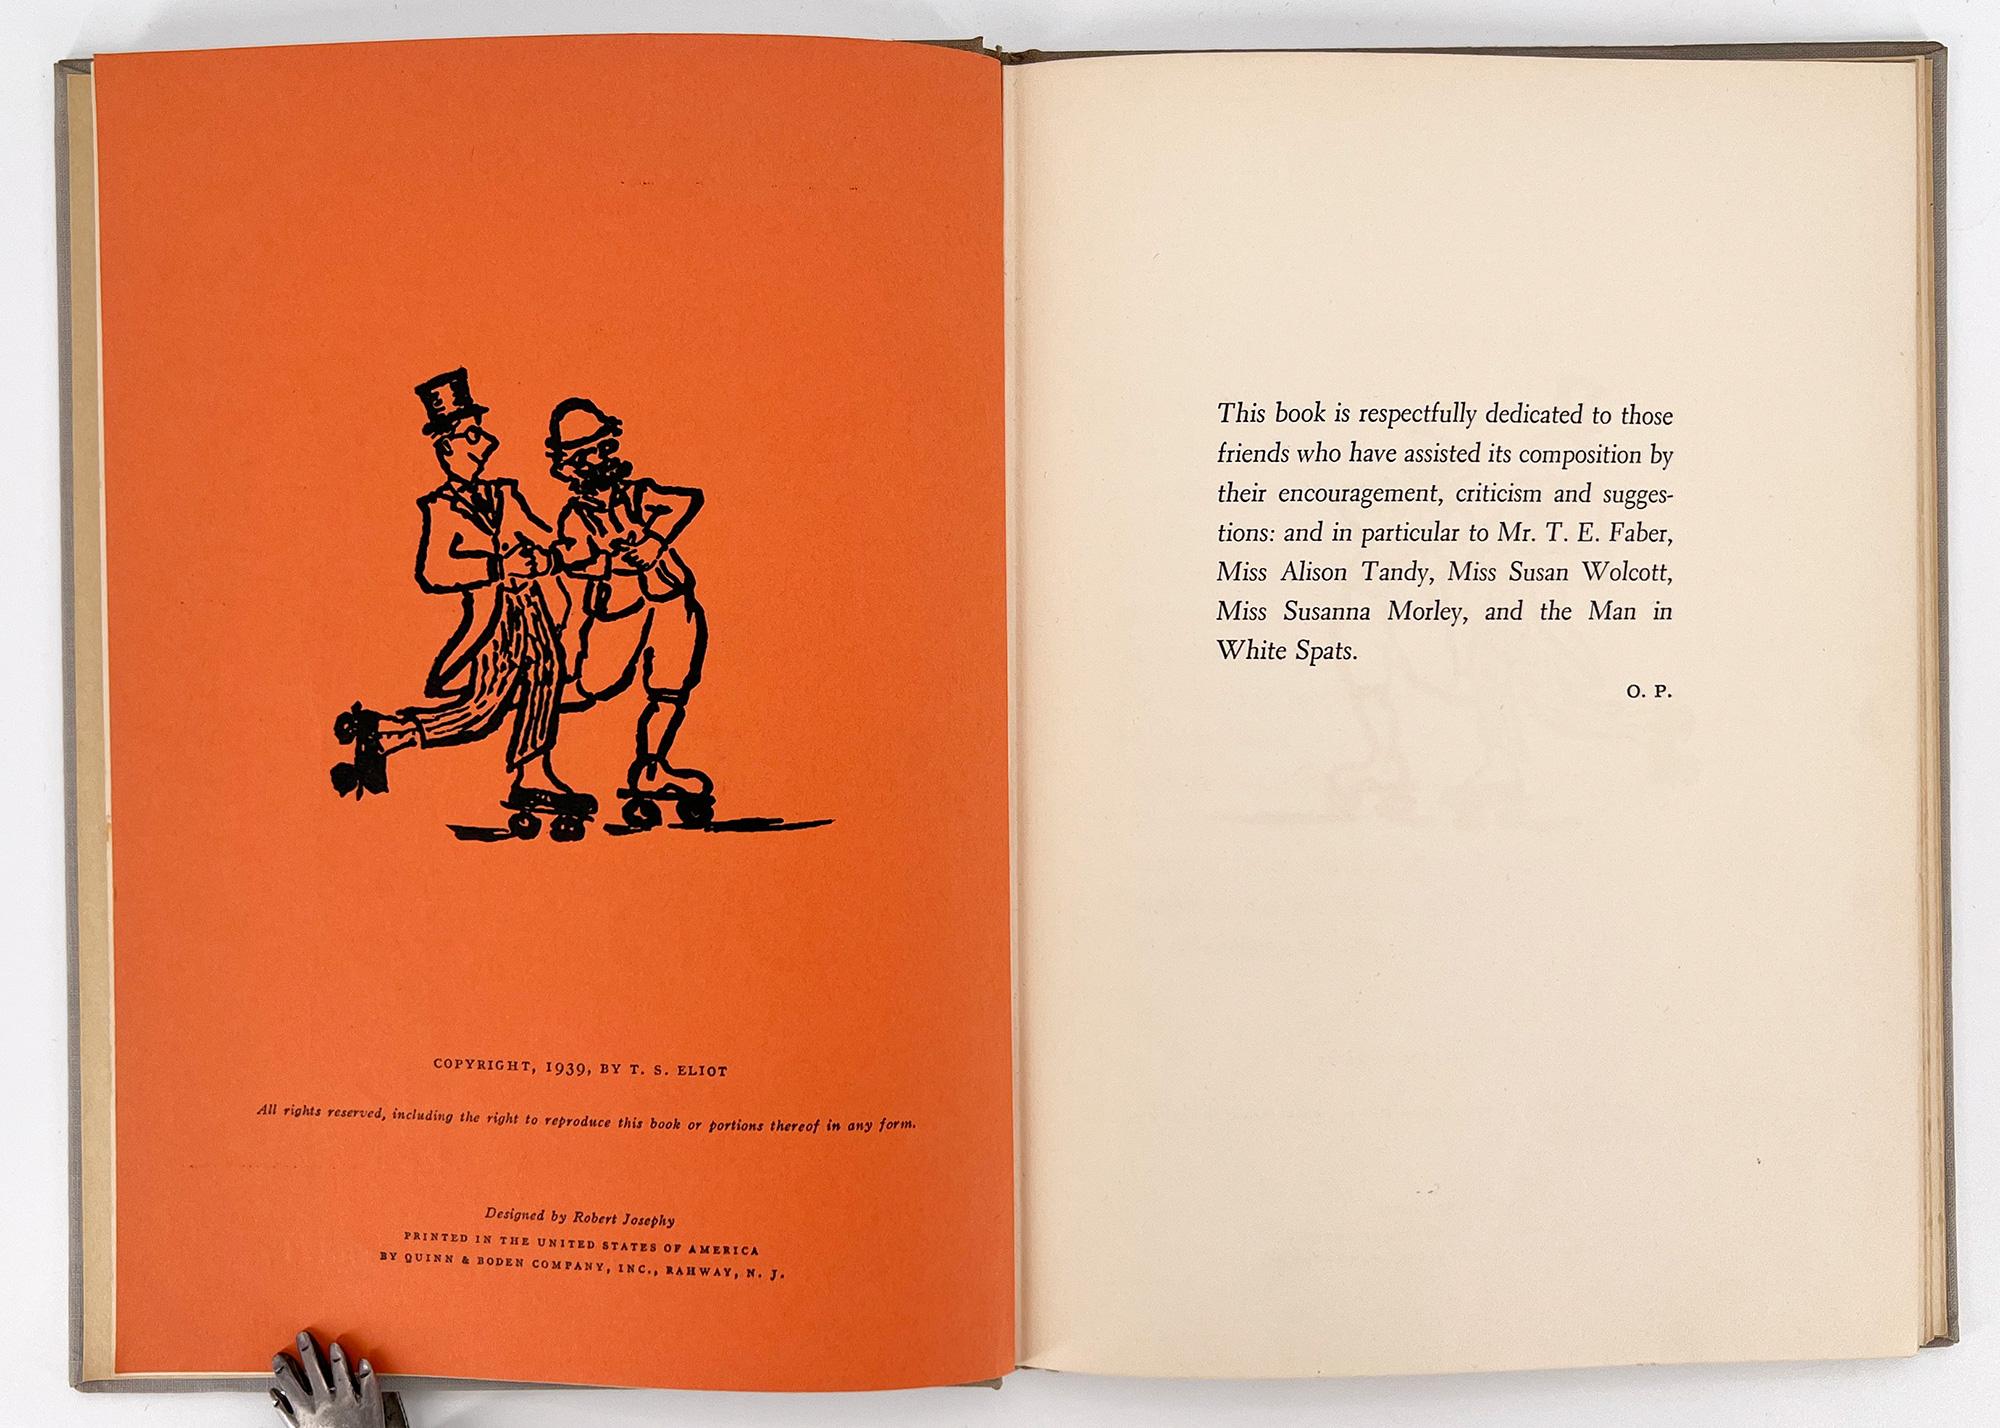 ERSTE AMERIKANISCHE AUSGABE, New York: Harcourt, Brace and Company, 1939. 

Der Titel dieses Buches mit leichten Versen ist von Ezra Pounds freundschaftlichem Spitznamen für Eliot 